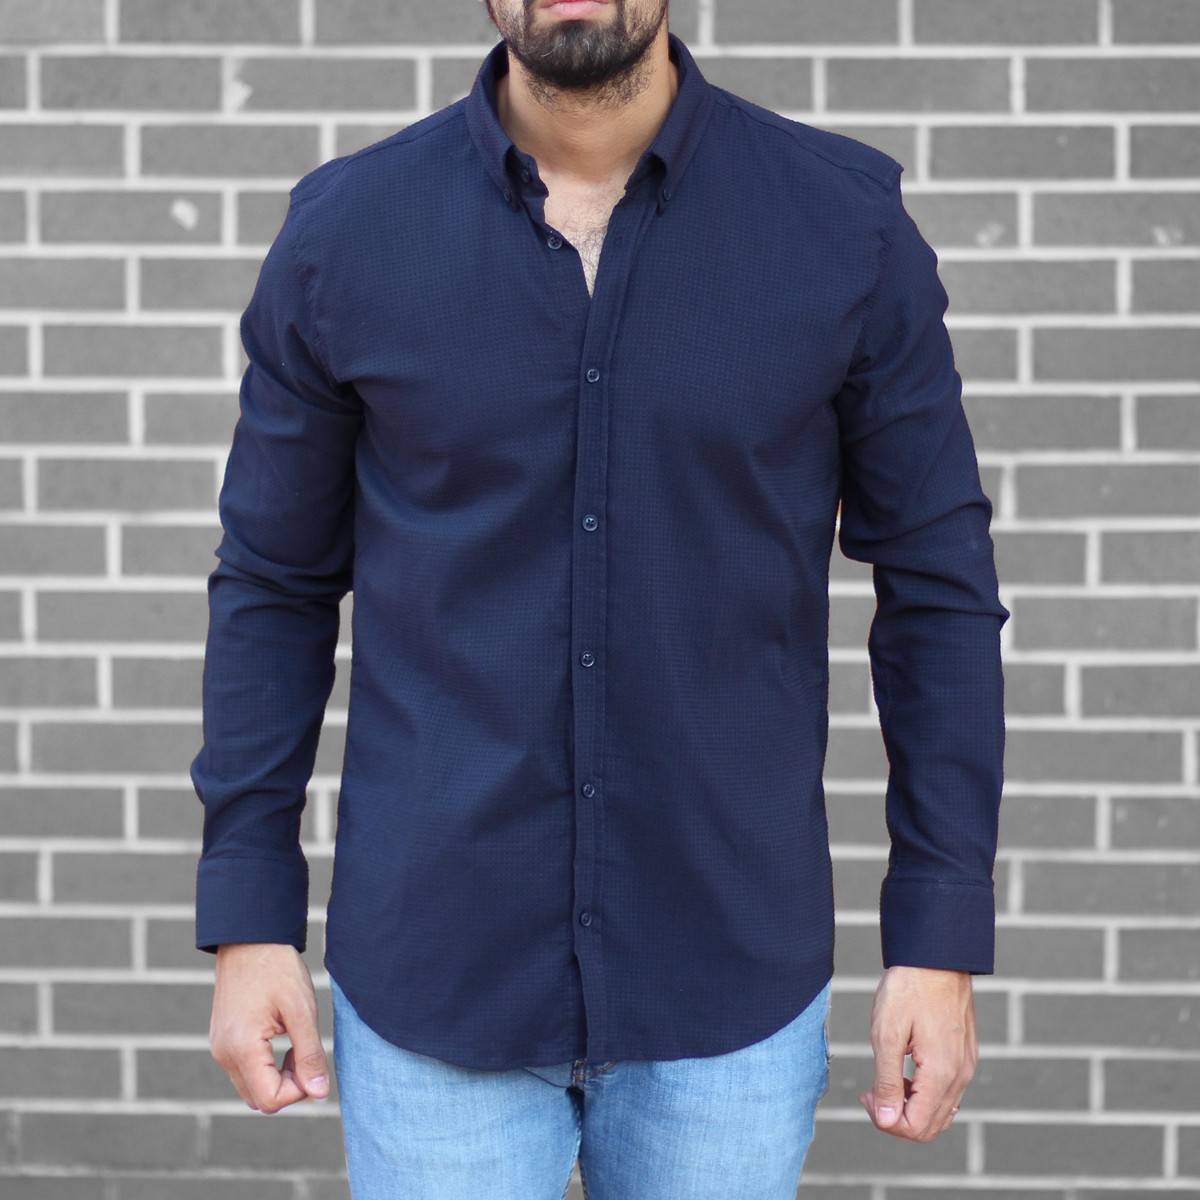 Men's Stylish Lycra Shirt In Navy Blue